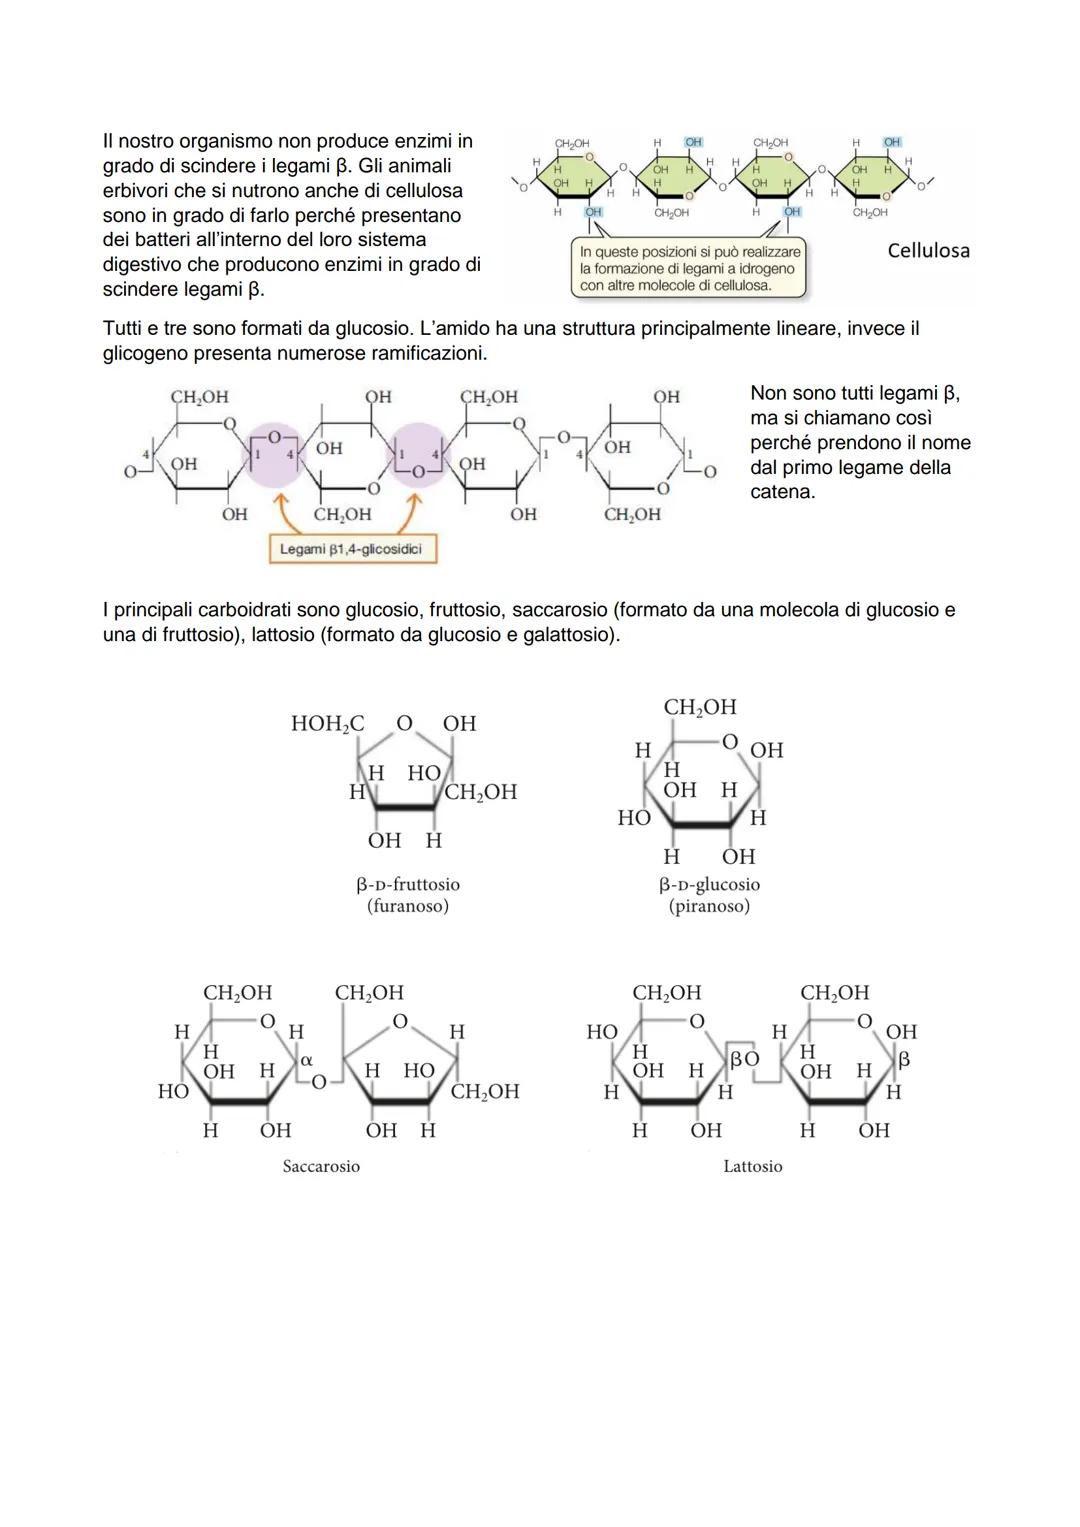 I carboidrati si suddividono in 4 gruppi in base alla complessità della loro struttura:
monosaccaridi (costituiti da un'unica molecola di ca